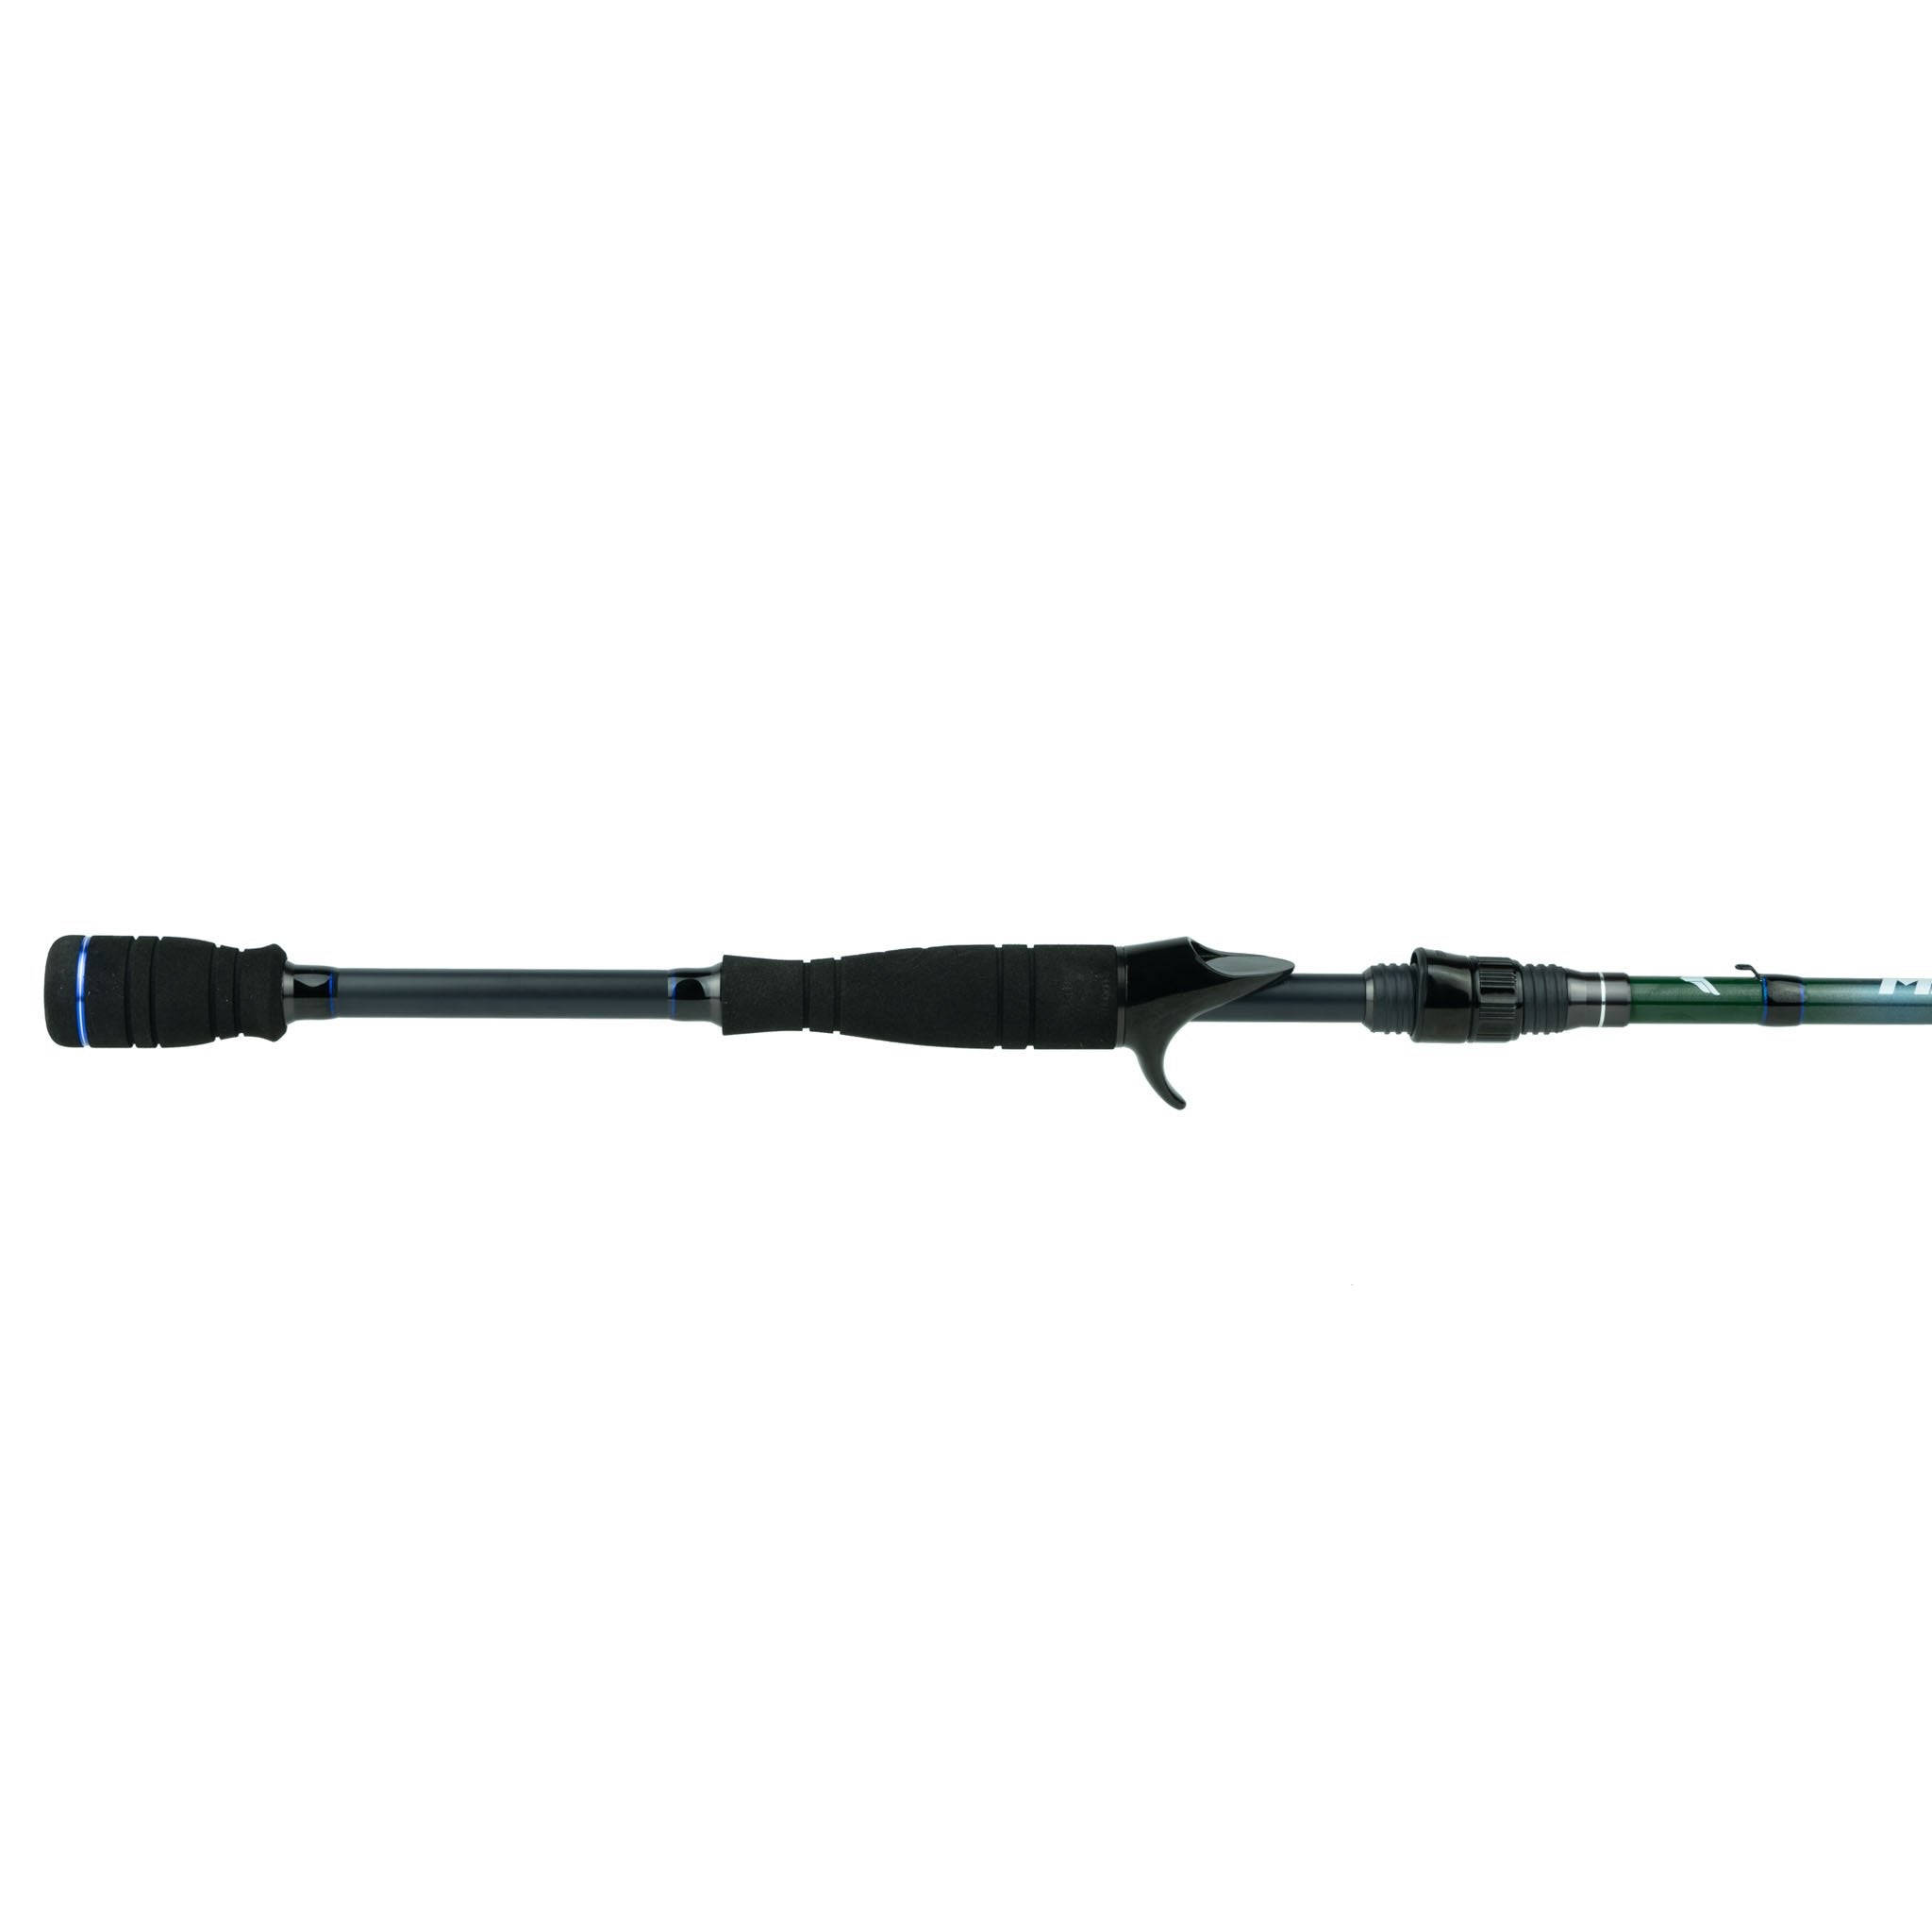 6th Sense Fishing Milliken Series Rod - 6'10 inch Medium (Spinning Rod)